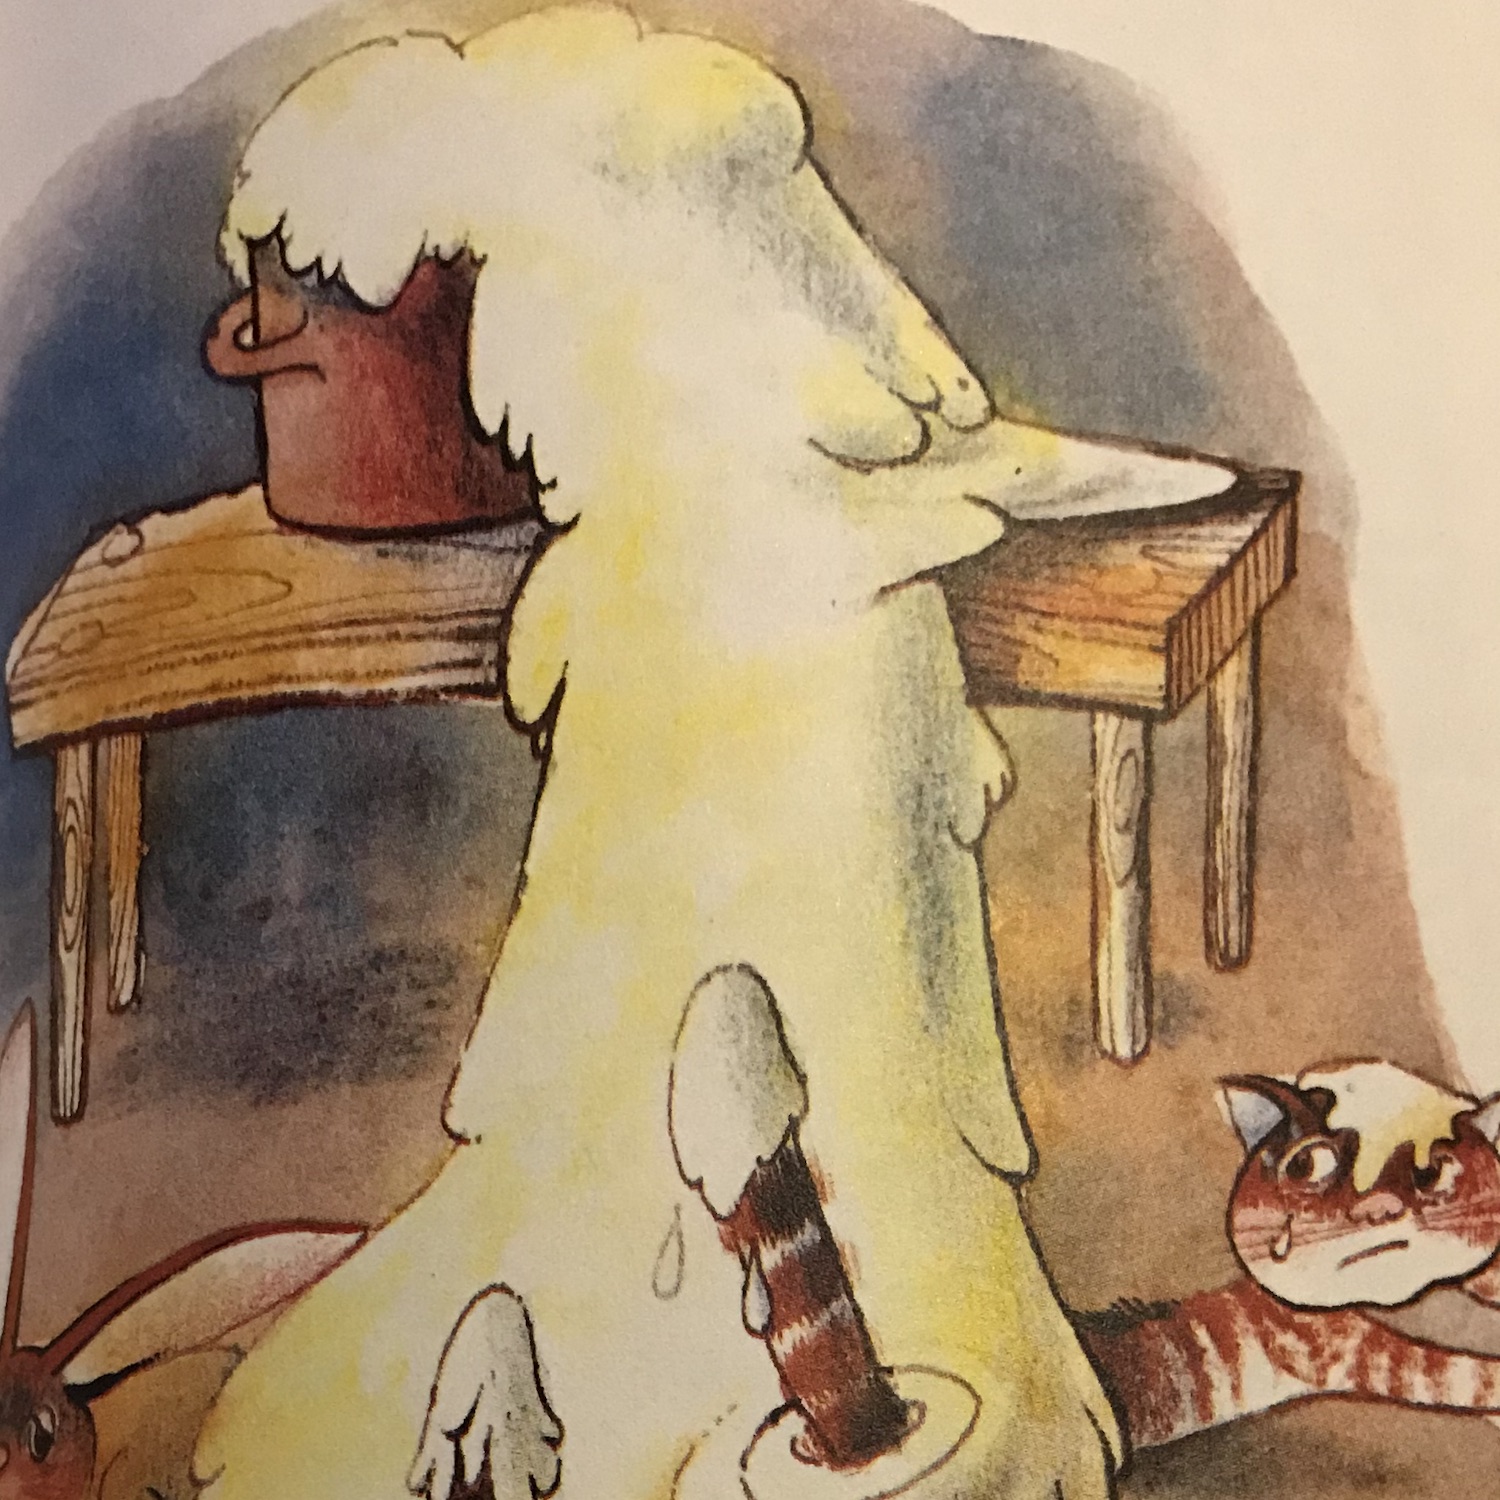 Zeichnung eines mit Brei überquillenden Topfes der auf einem Holztisch steht.  Der Brei ergießt sich auf den Boden und bedeckt zur Hälfte eine Katze, die zu fliehen versucht.